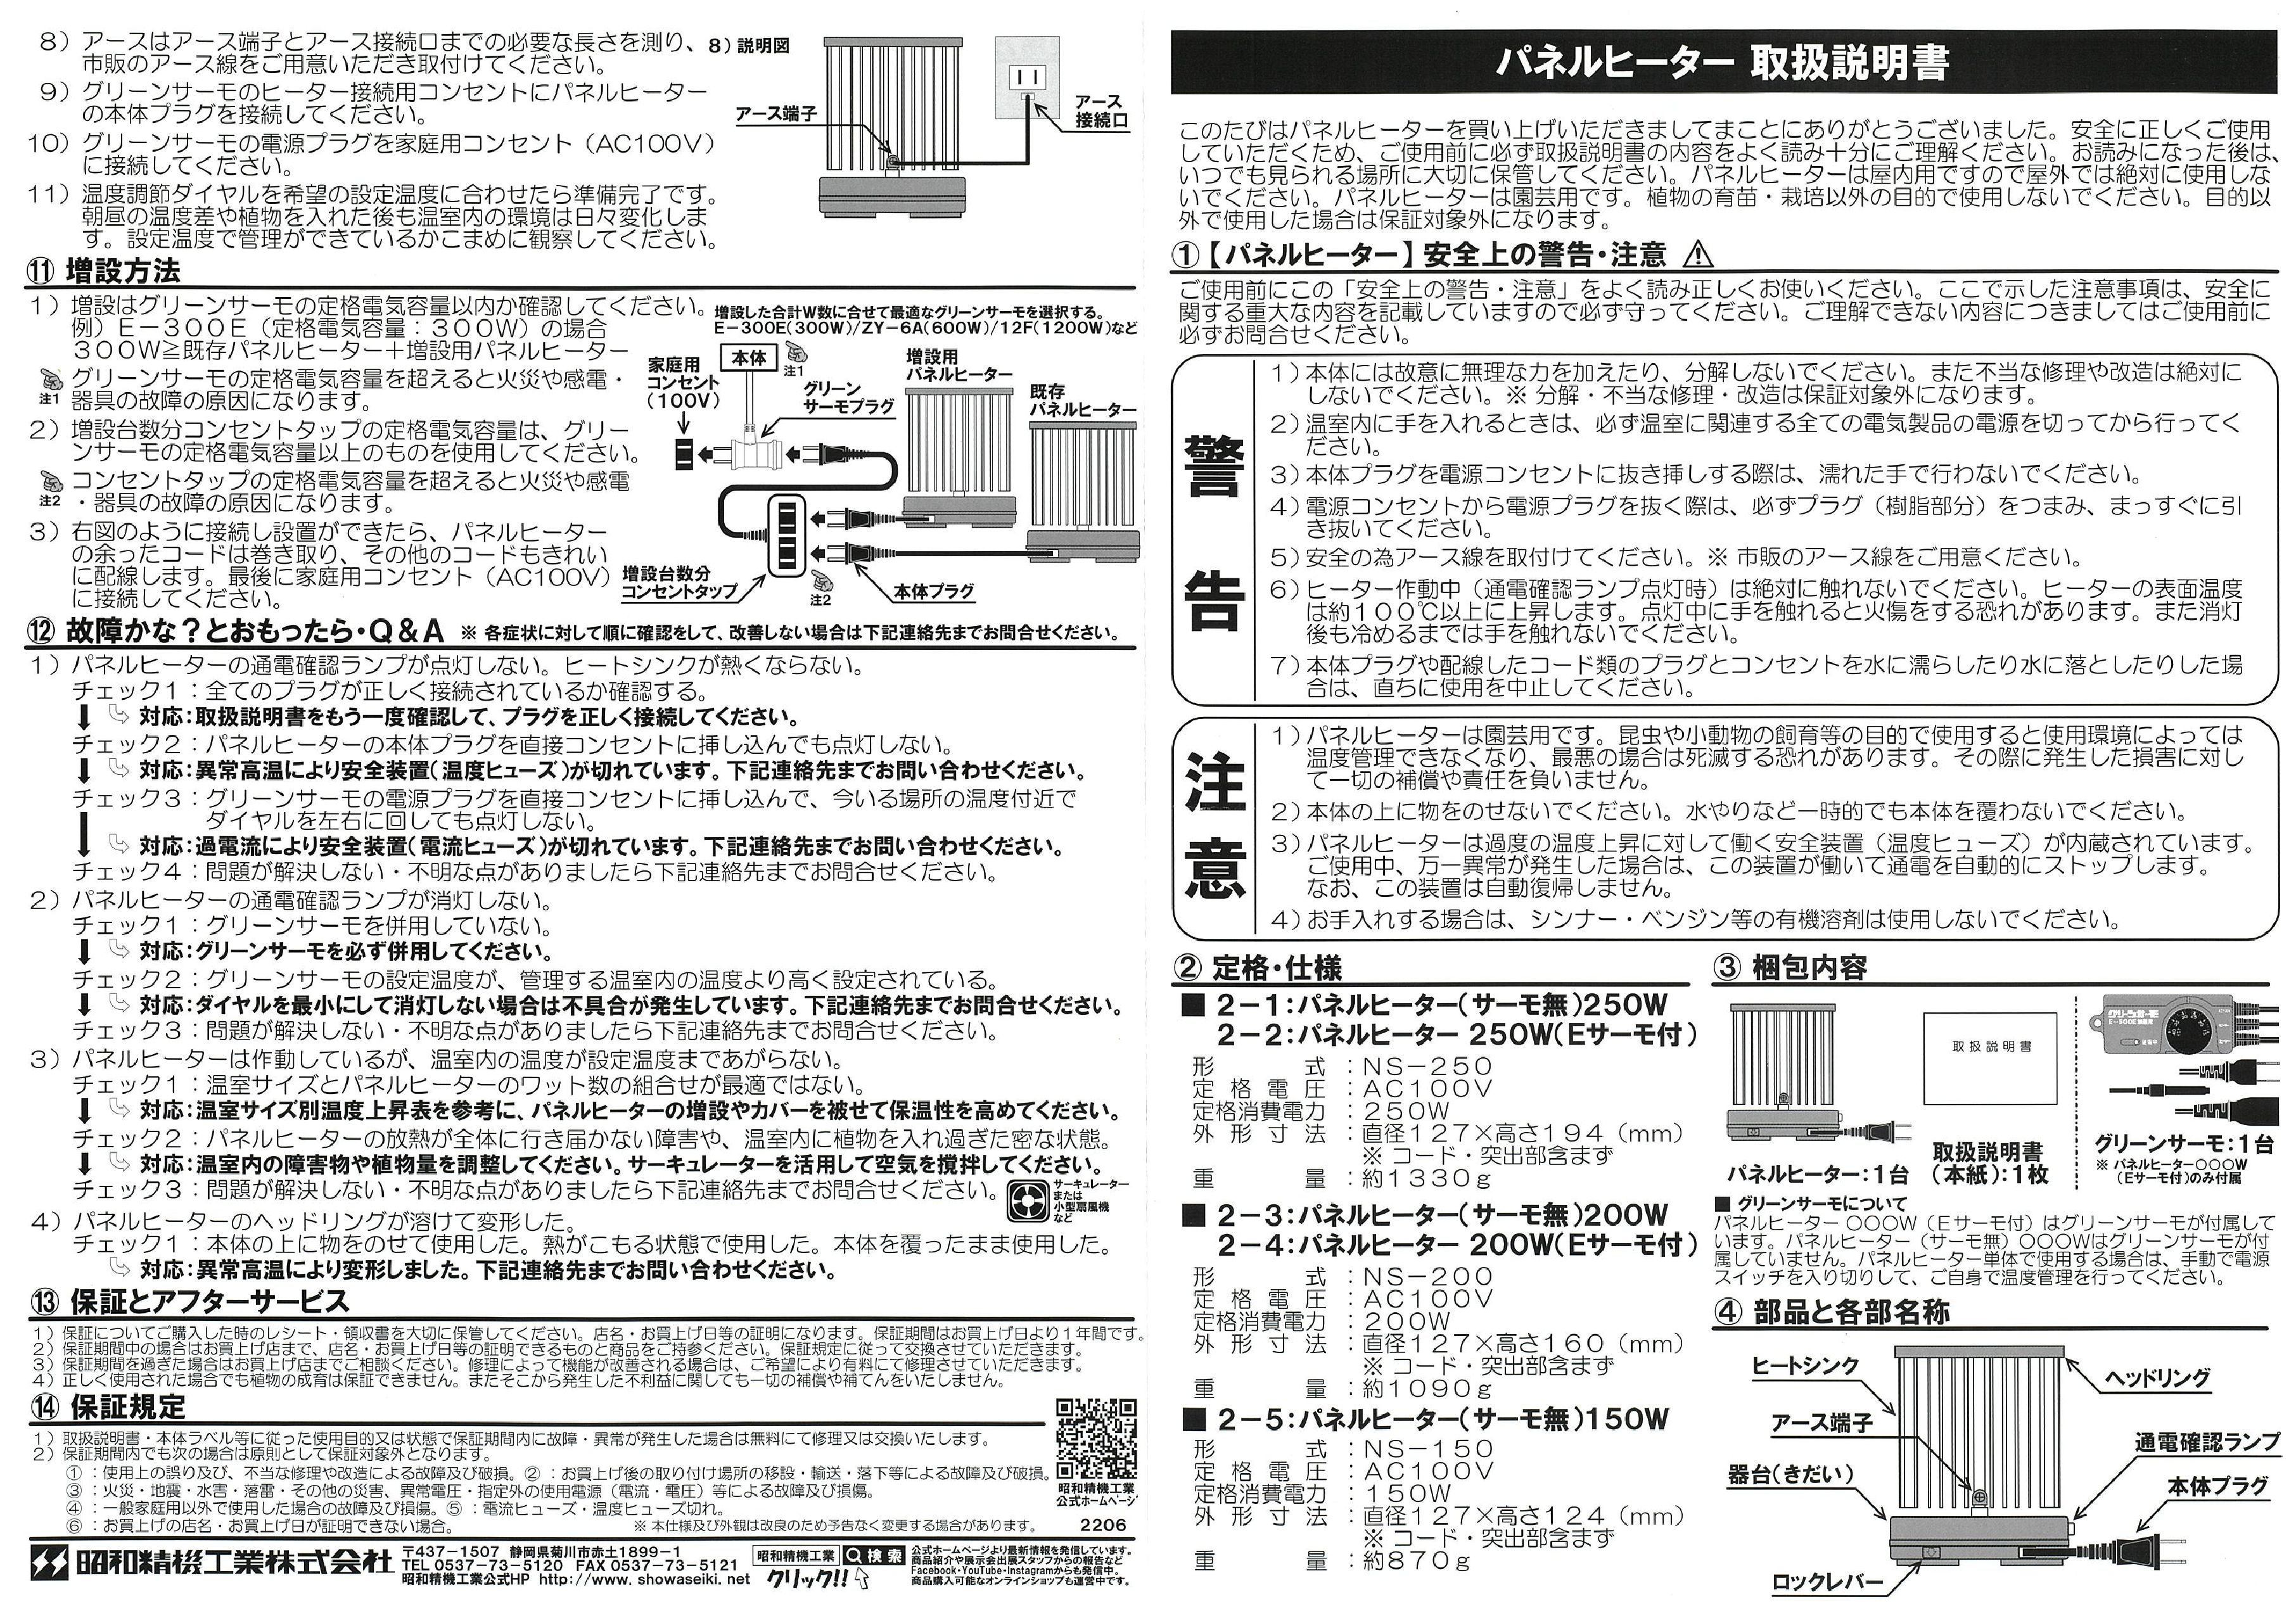 取扱説明書 パネルヒーター表 2206|昭和精機工業(株)